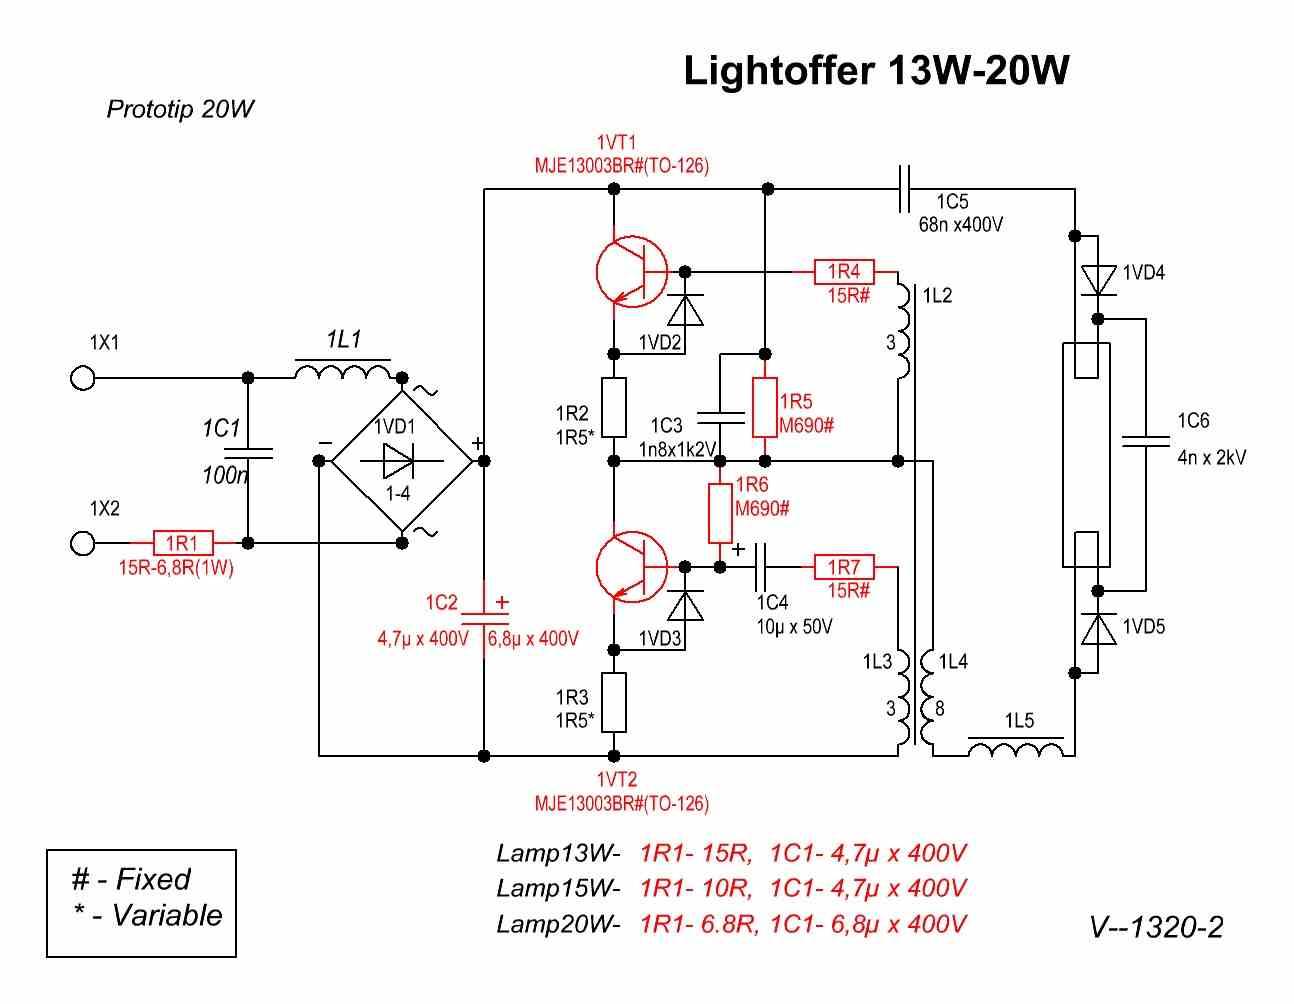 Балласт для люминесцентных ламп - назначение и устройство